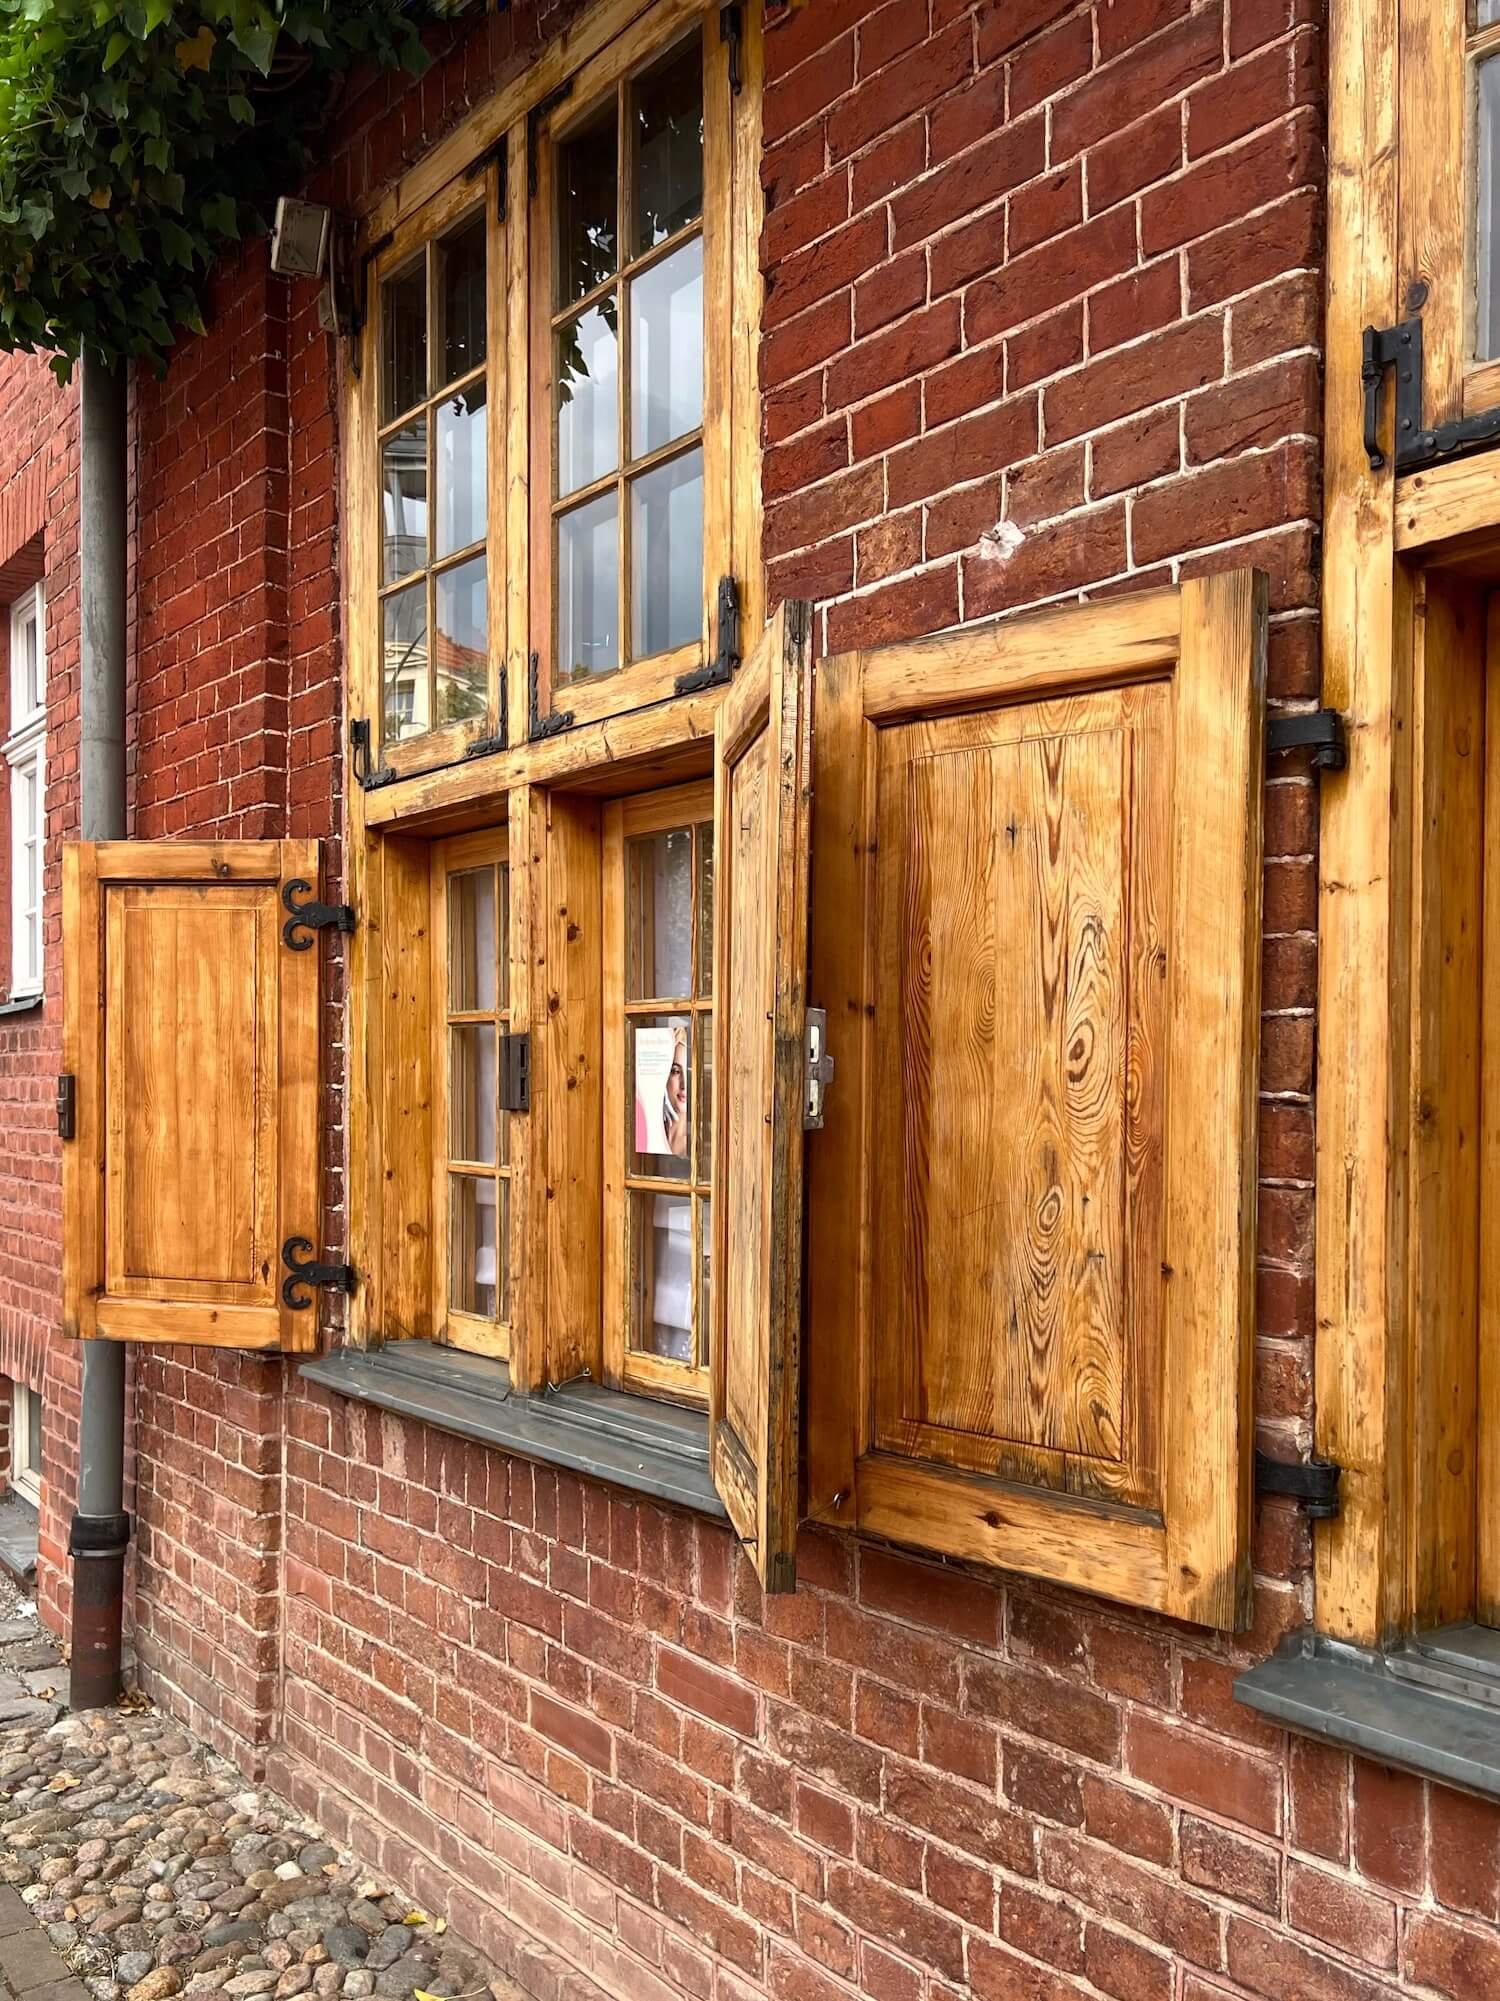 potsdam dutch quarter wooden shutters.JPG